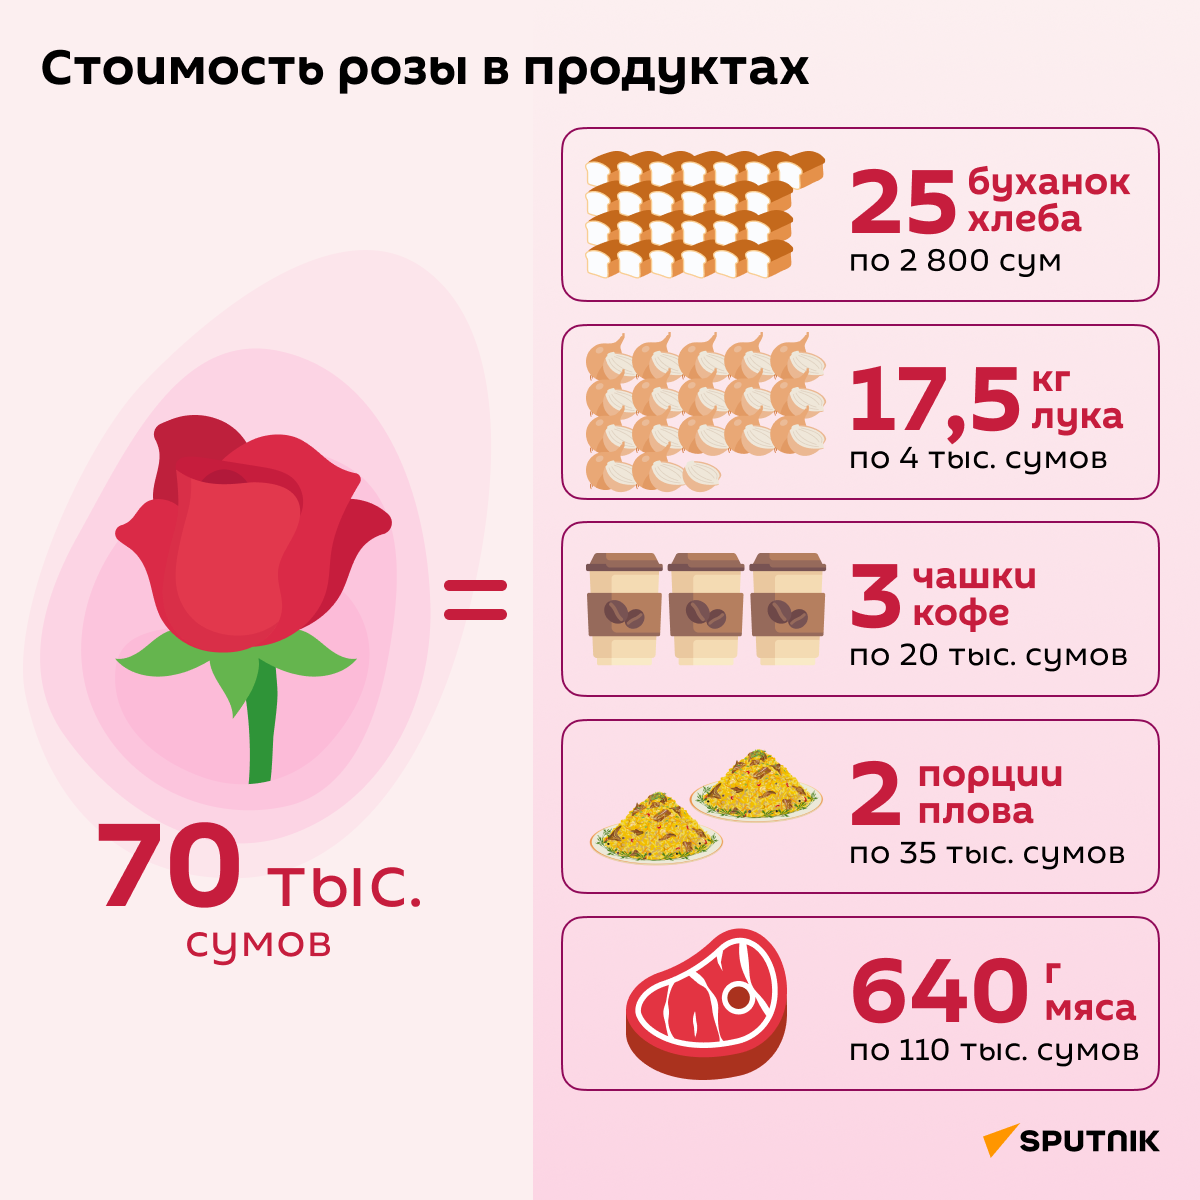 Стоимость розы в продуктах - Sputnik Узбекистан